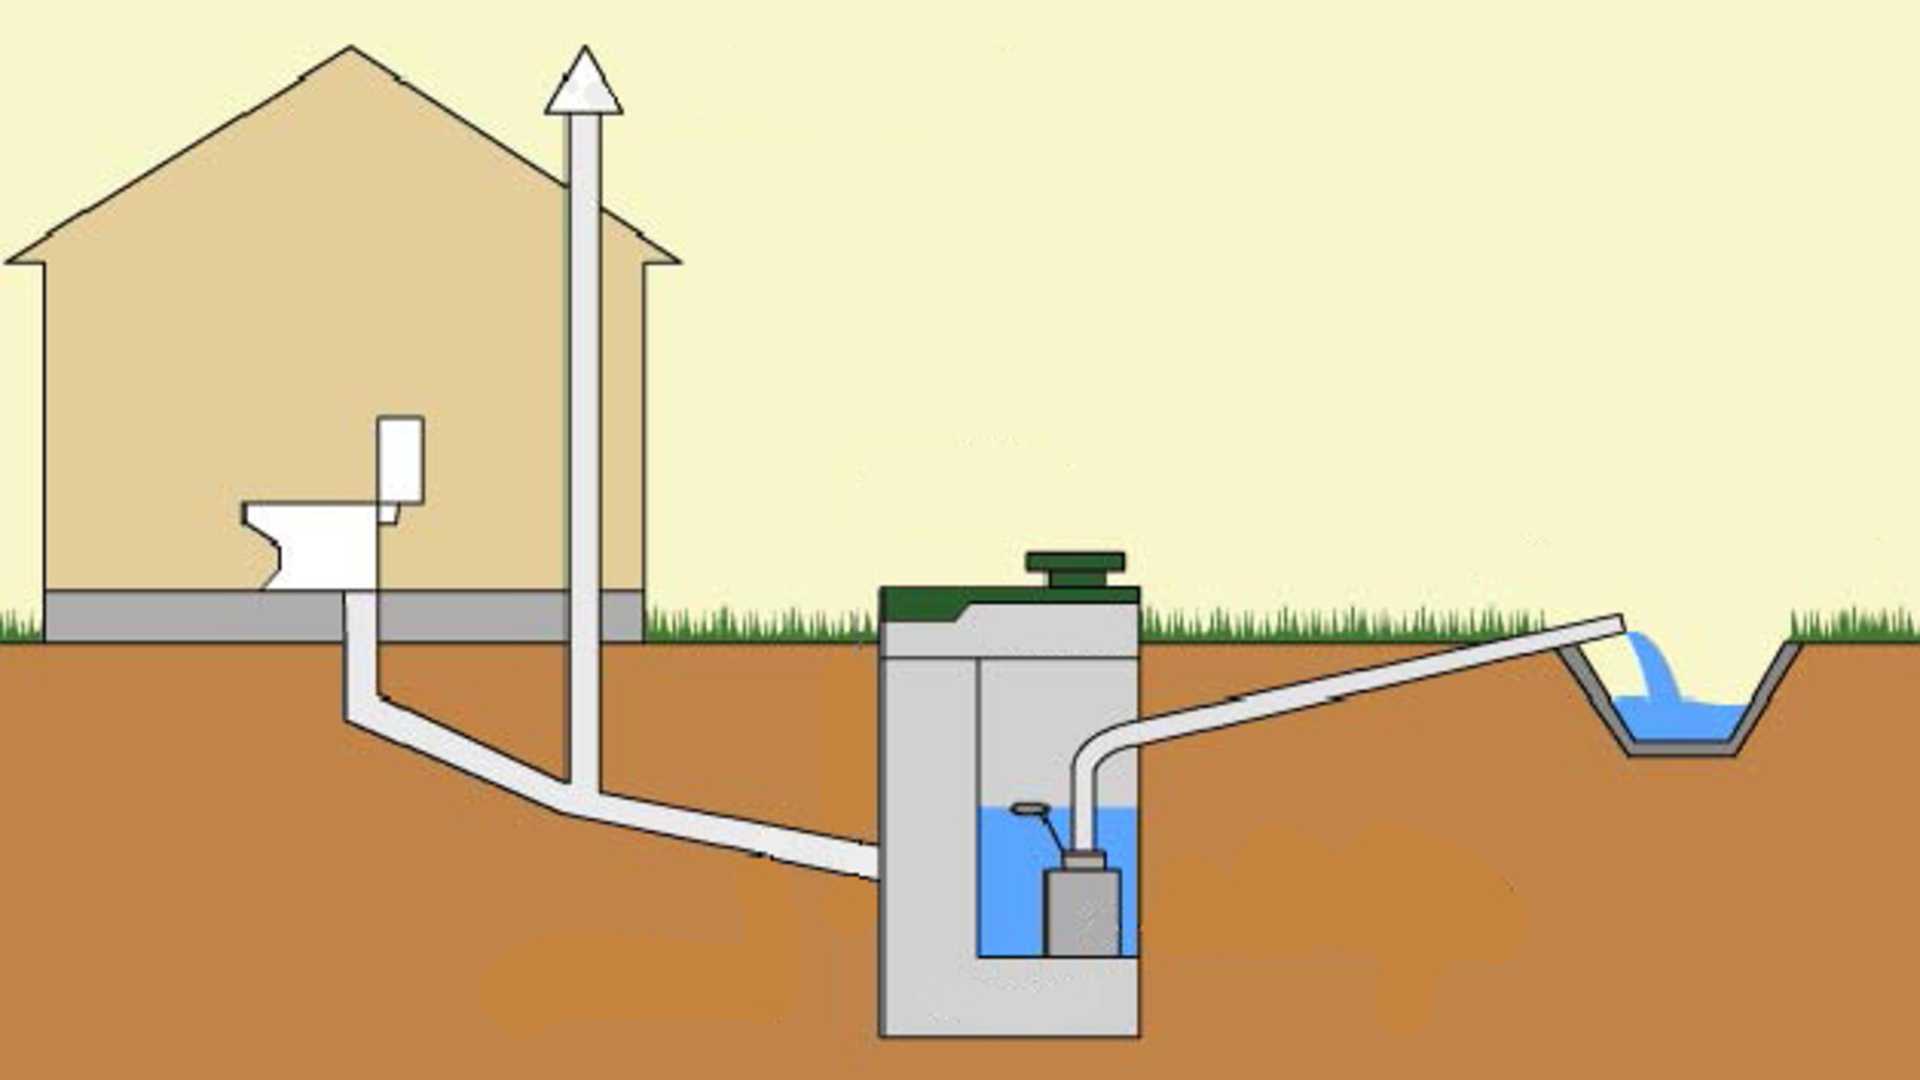 Машина для откачки канализации: как называется и как работает?